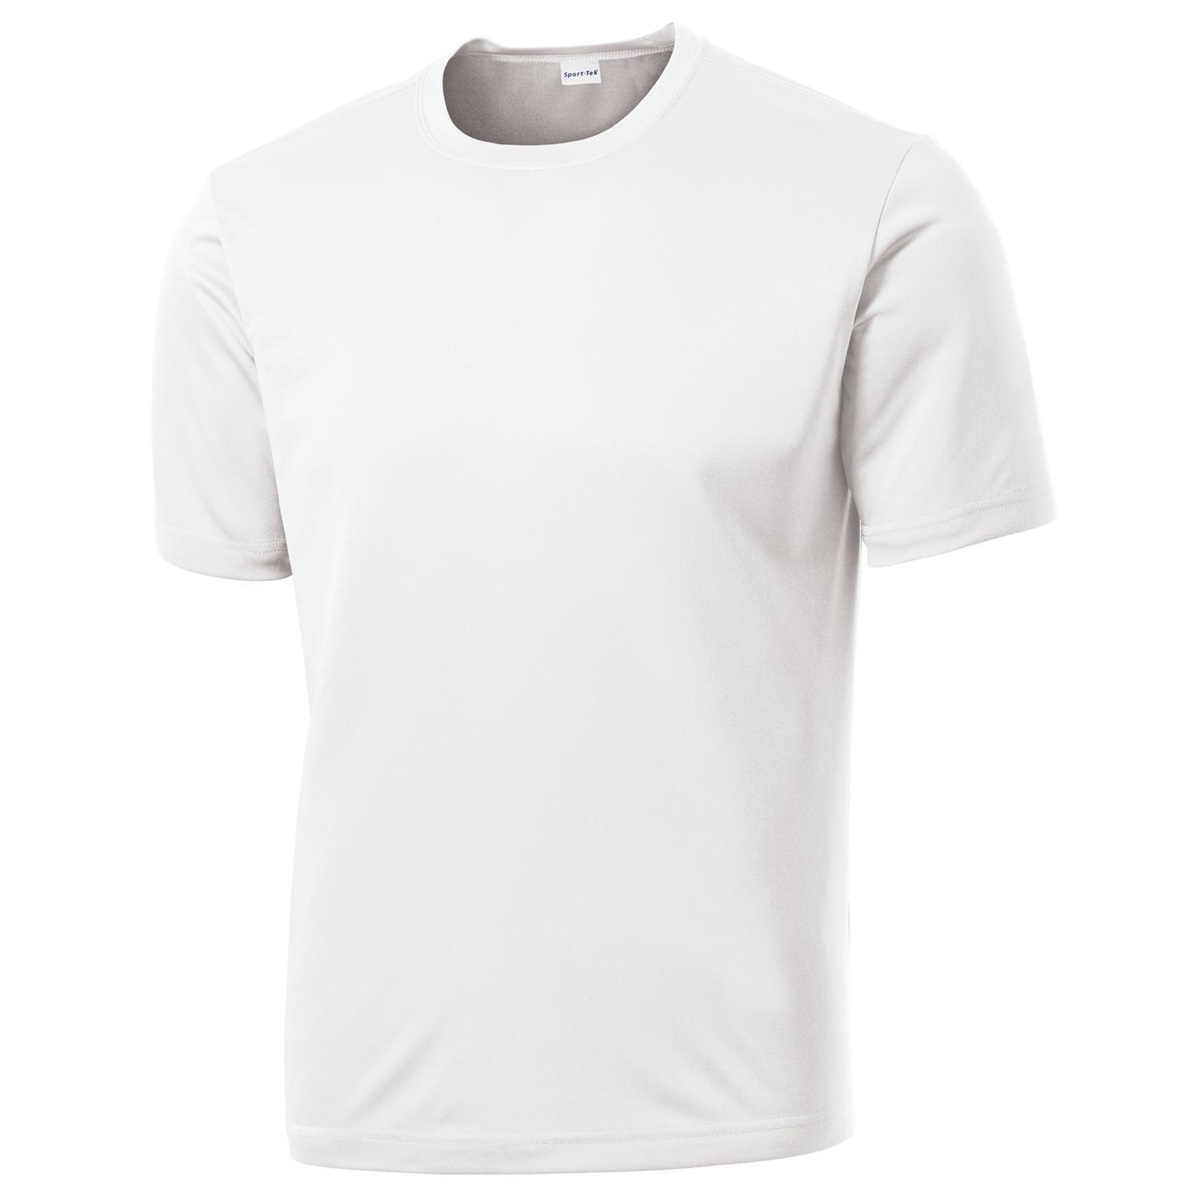 dry fit tshirt white